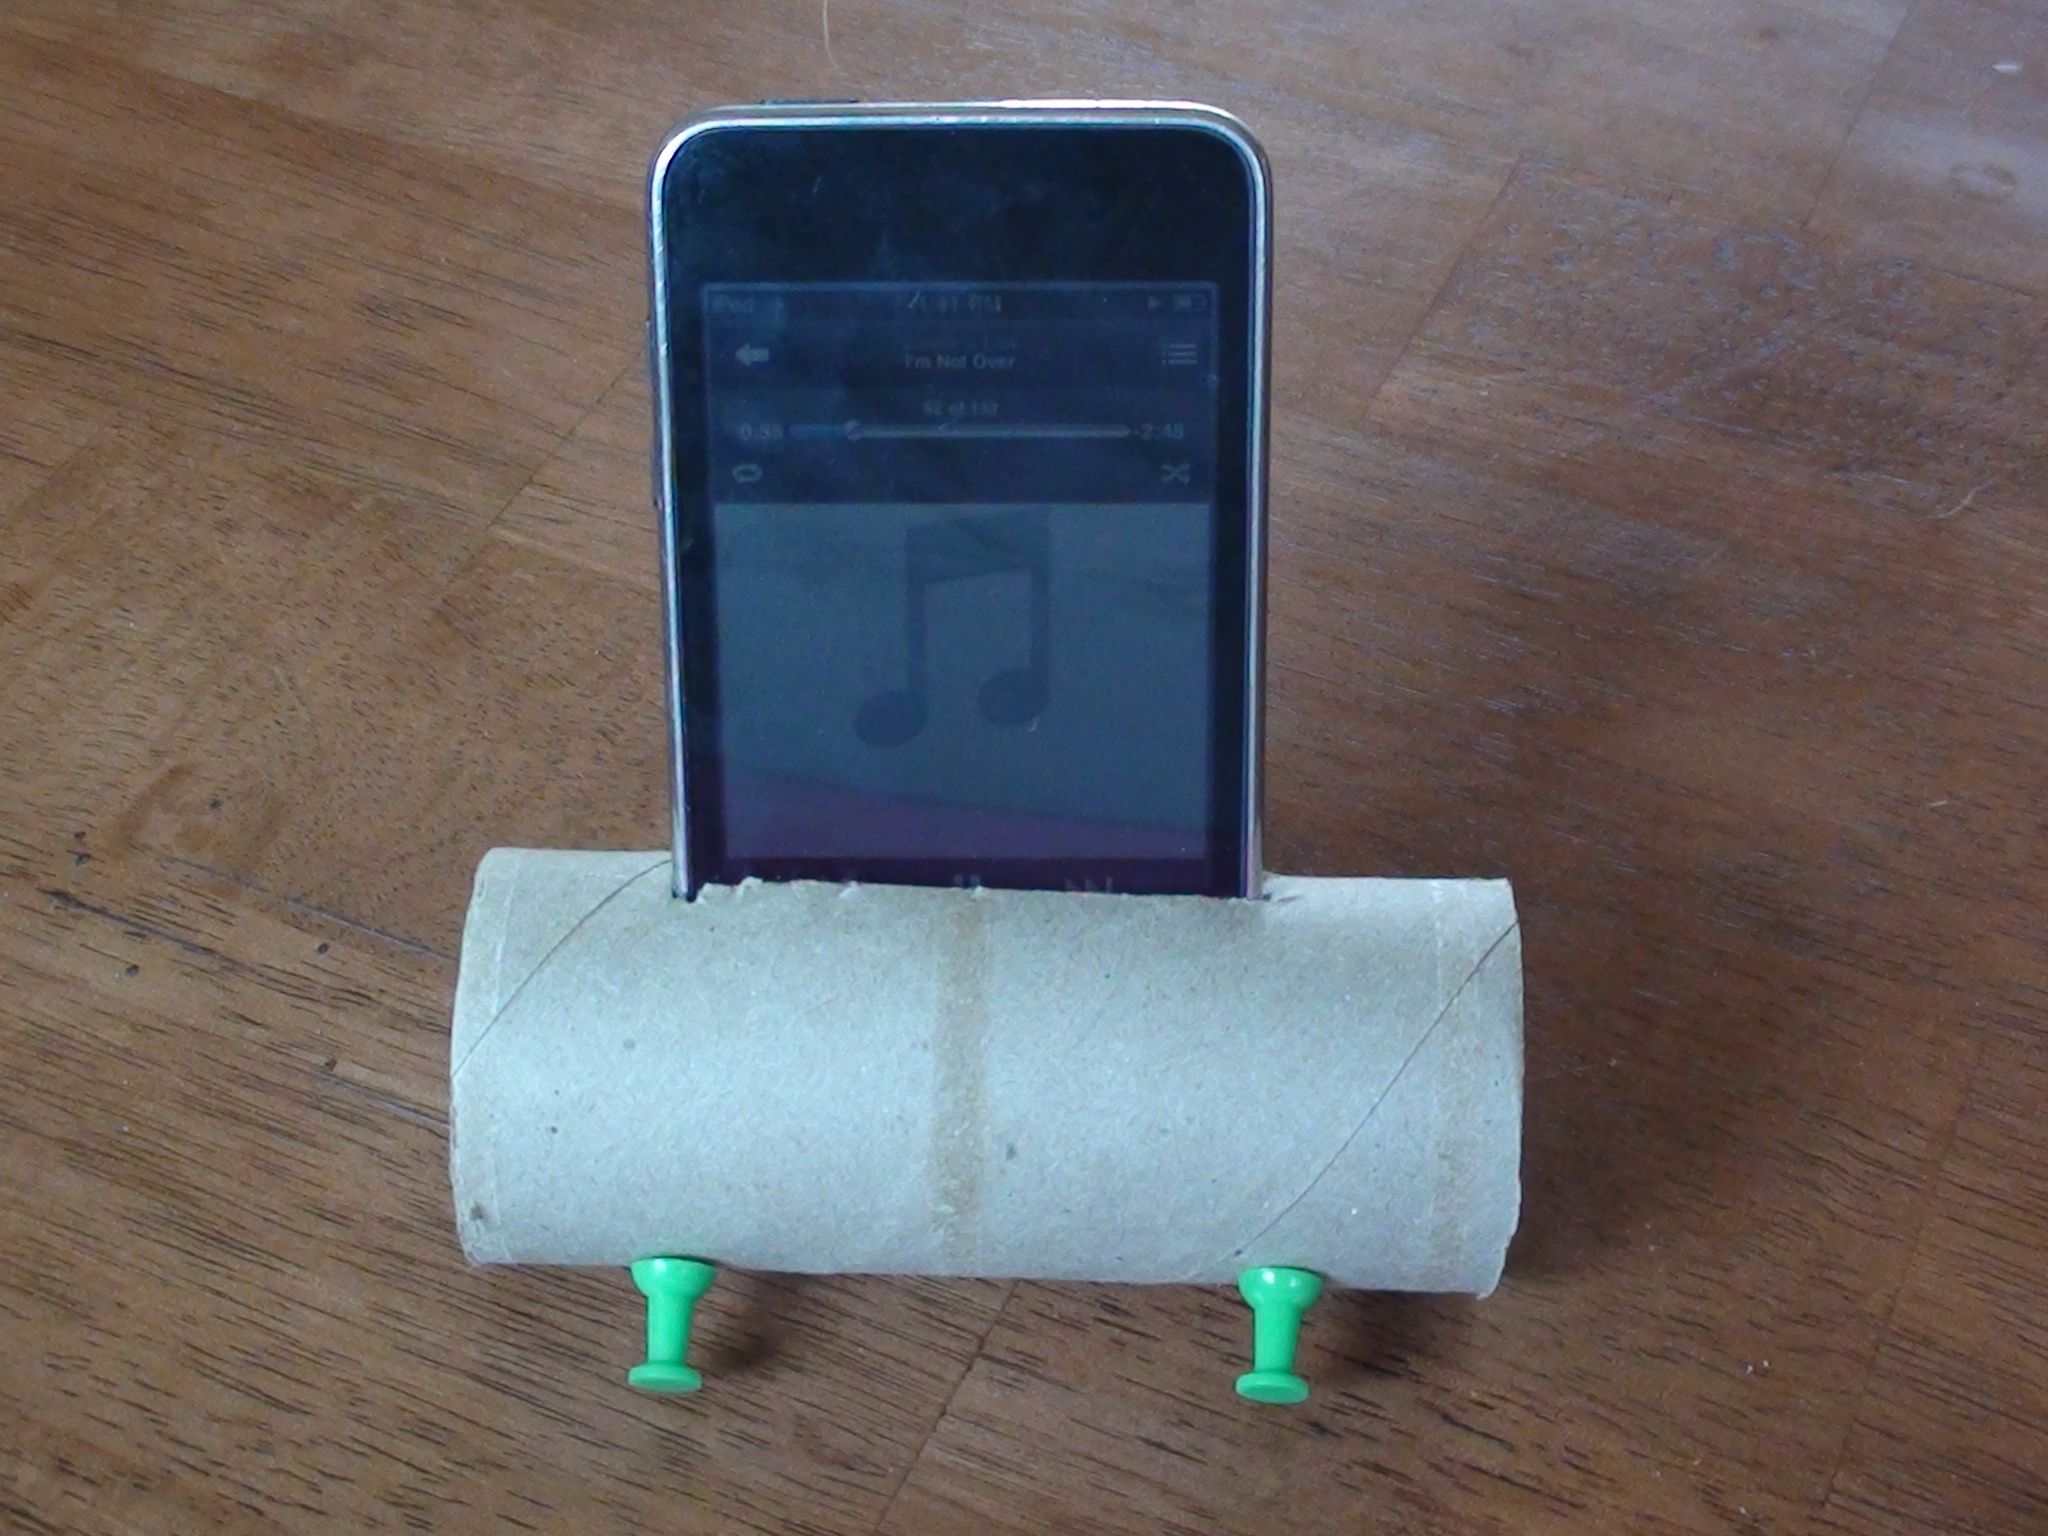 Come creare un altoparlante per smartphone con un rotolo di carta igienica